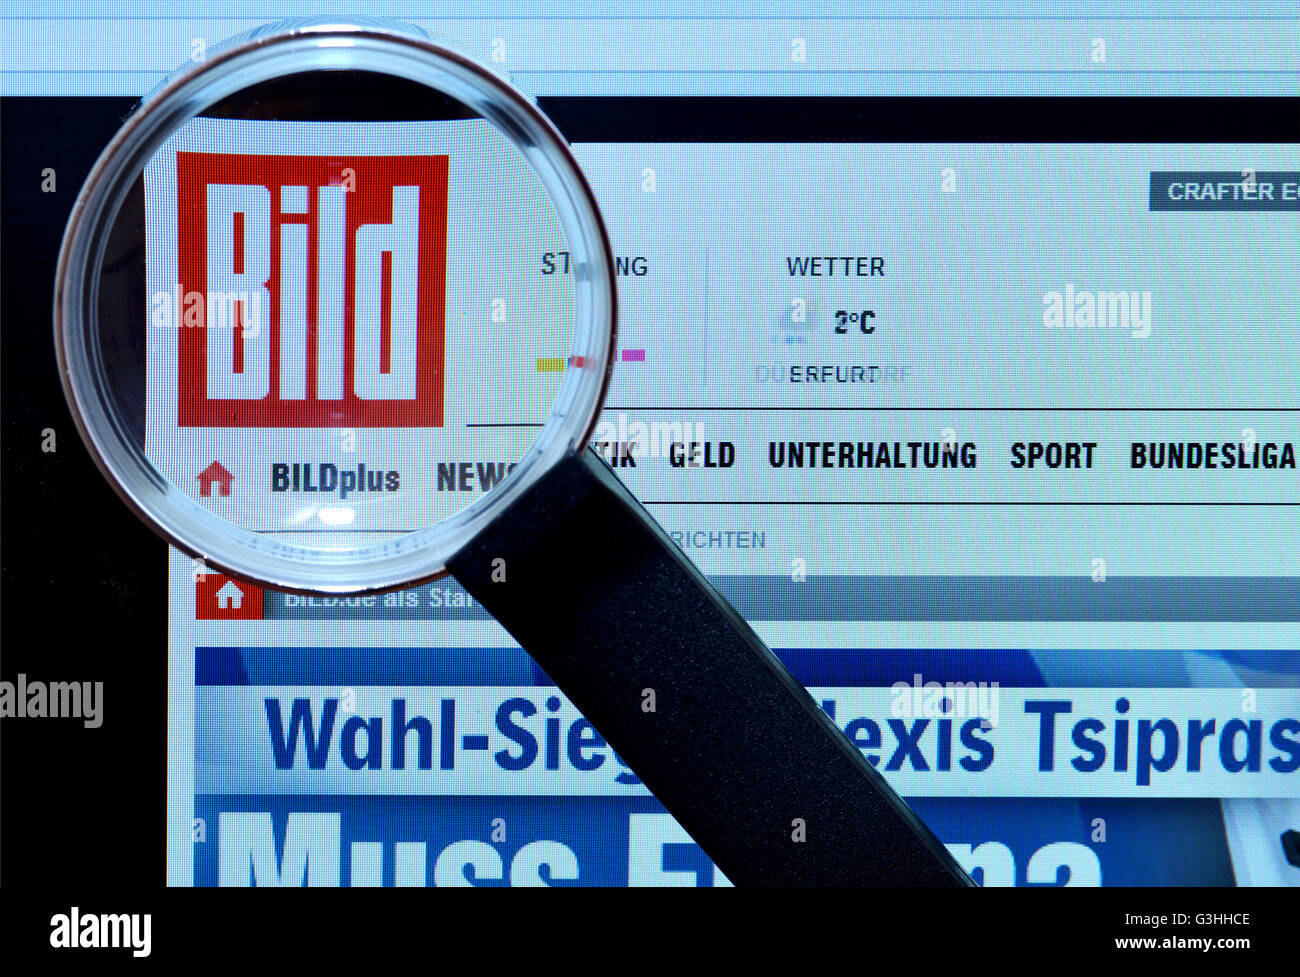 Bildschirm, Internet, Lupe, bild.de, Bildzeitung Stock Photo